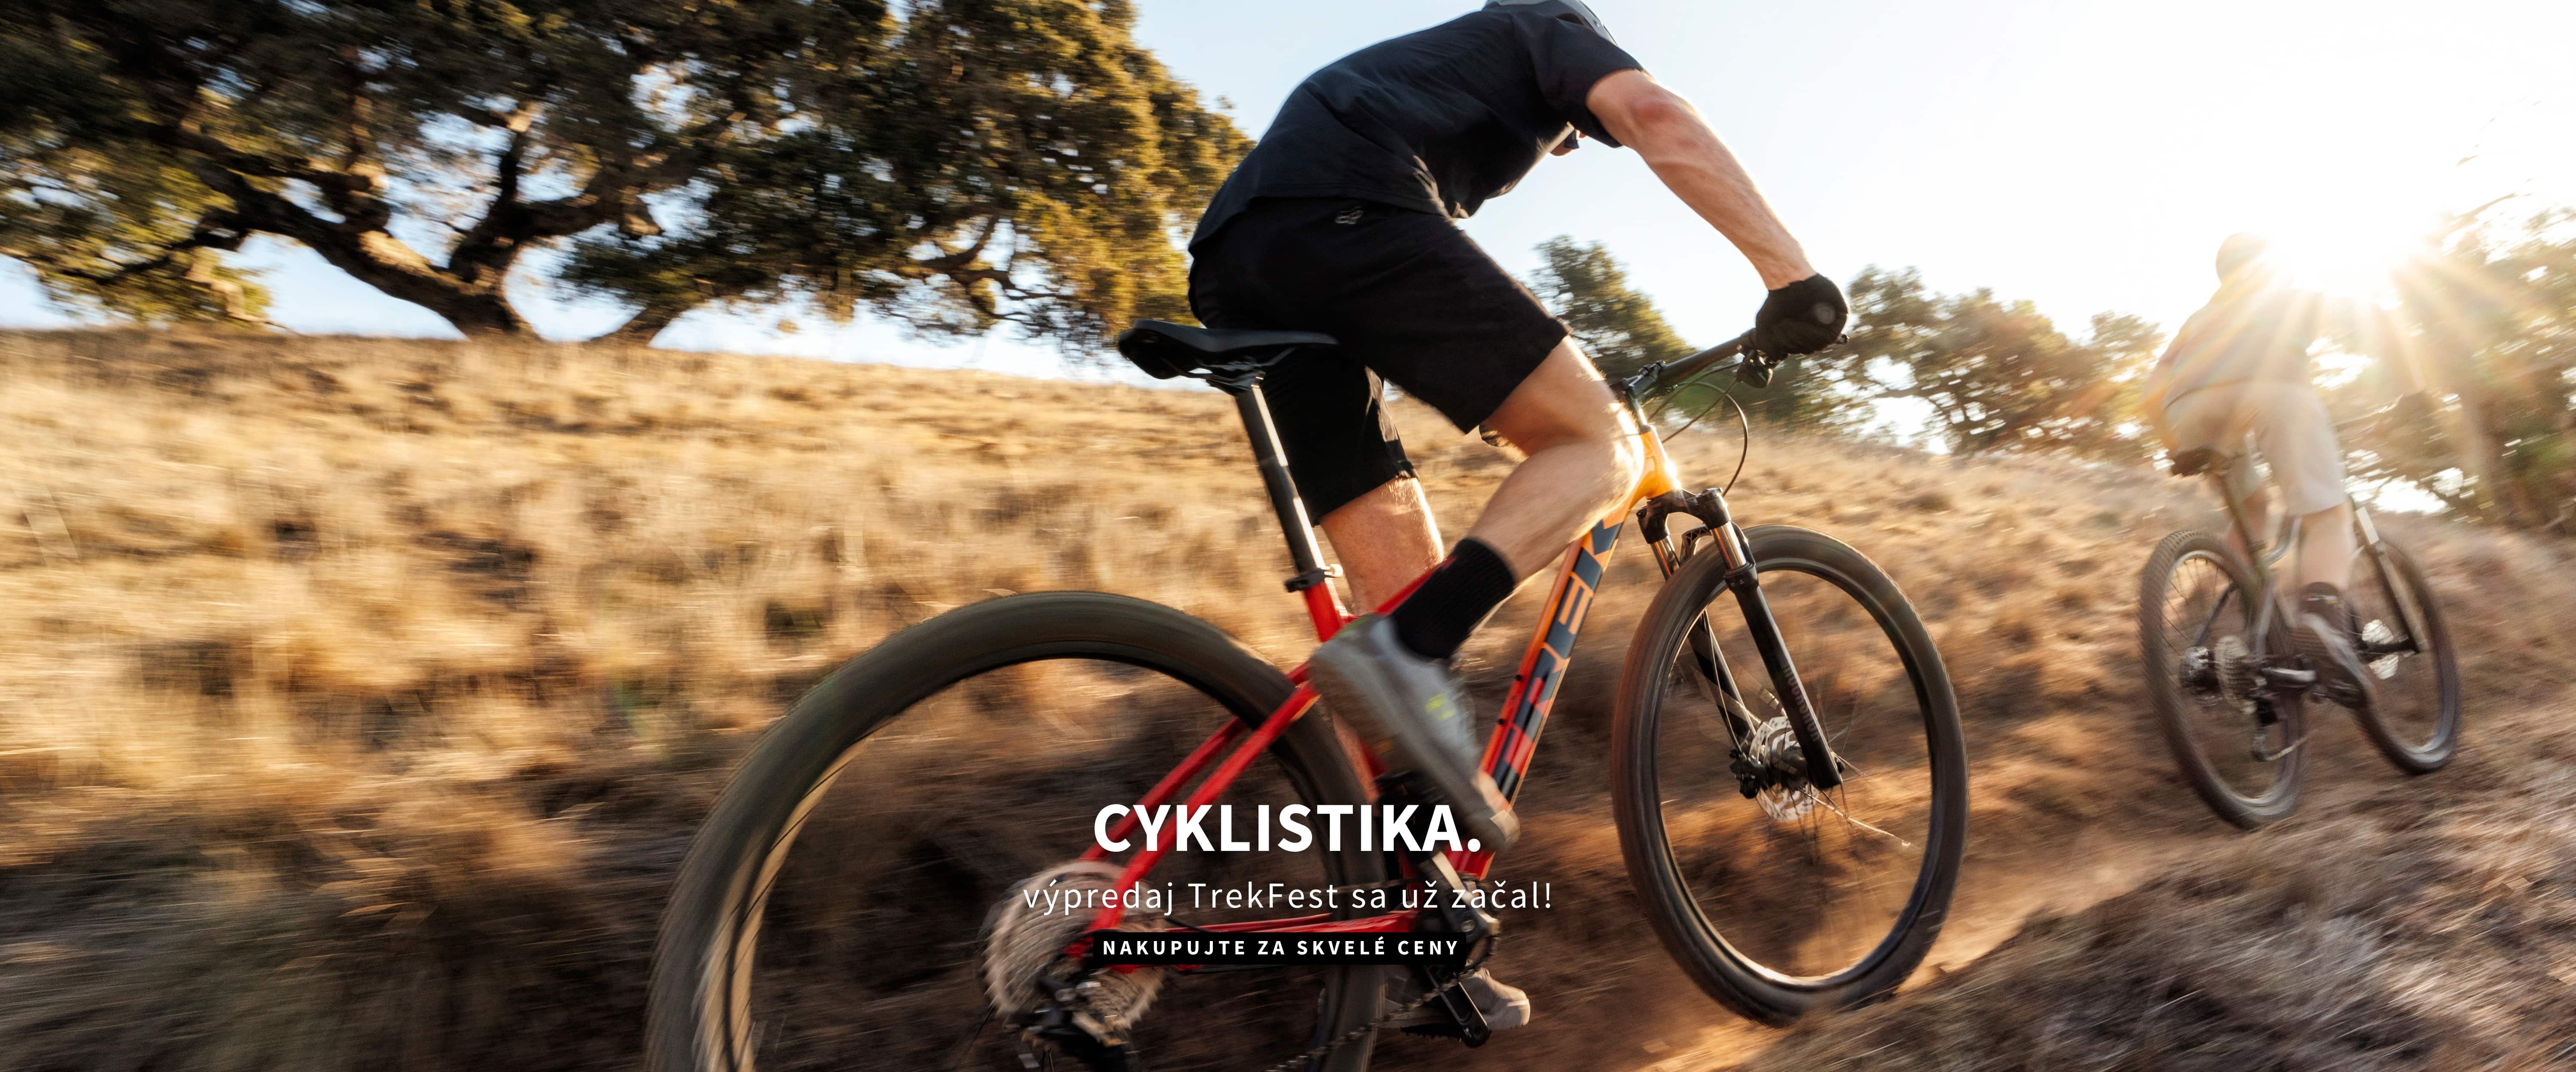 Cyklistika banner desktop